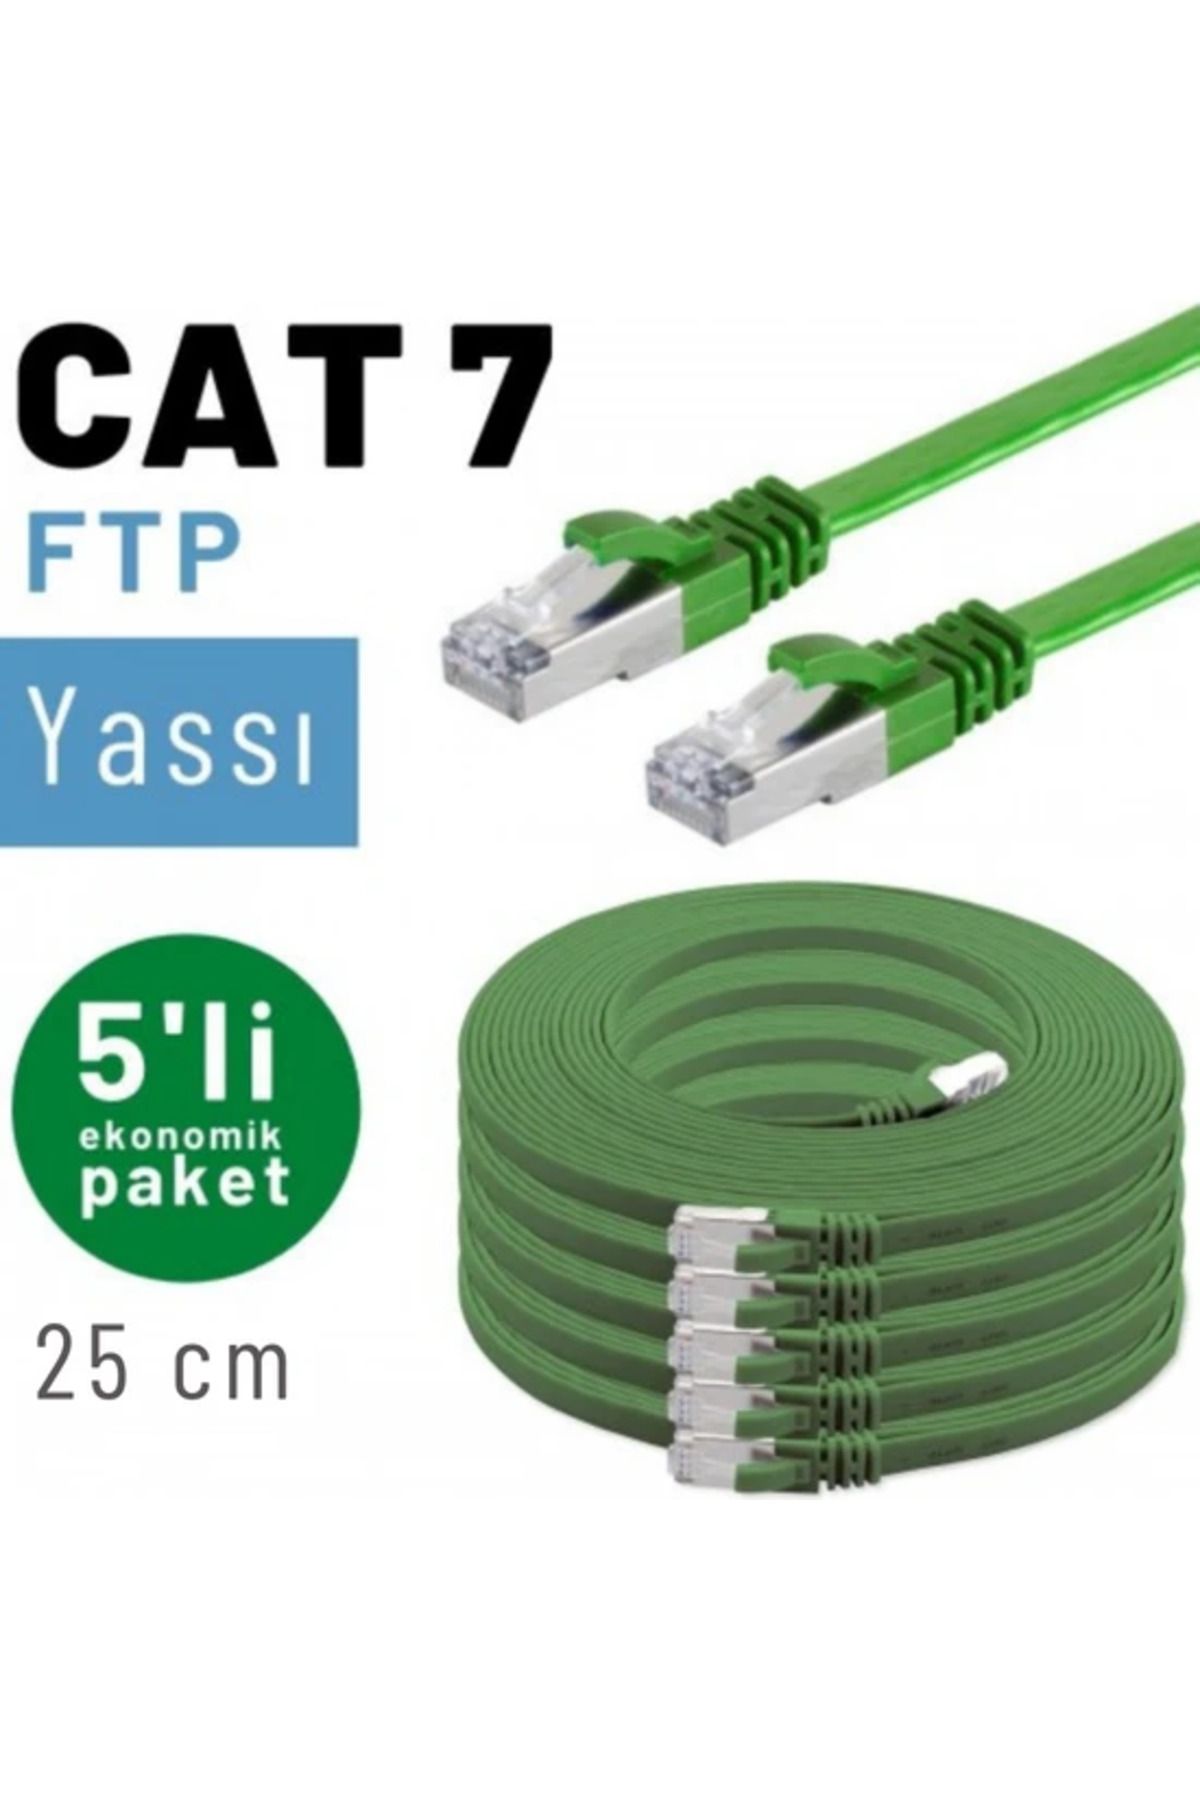 IRENIS 5 Adet 25 Cm Cat7 Kablo Yassı Ftp Ethernet Network Lan Kablosu, Yeşil